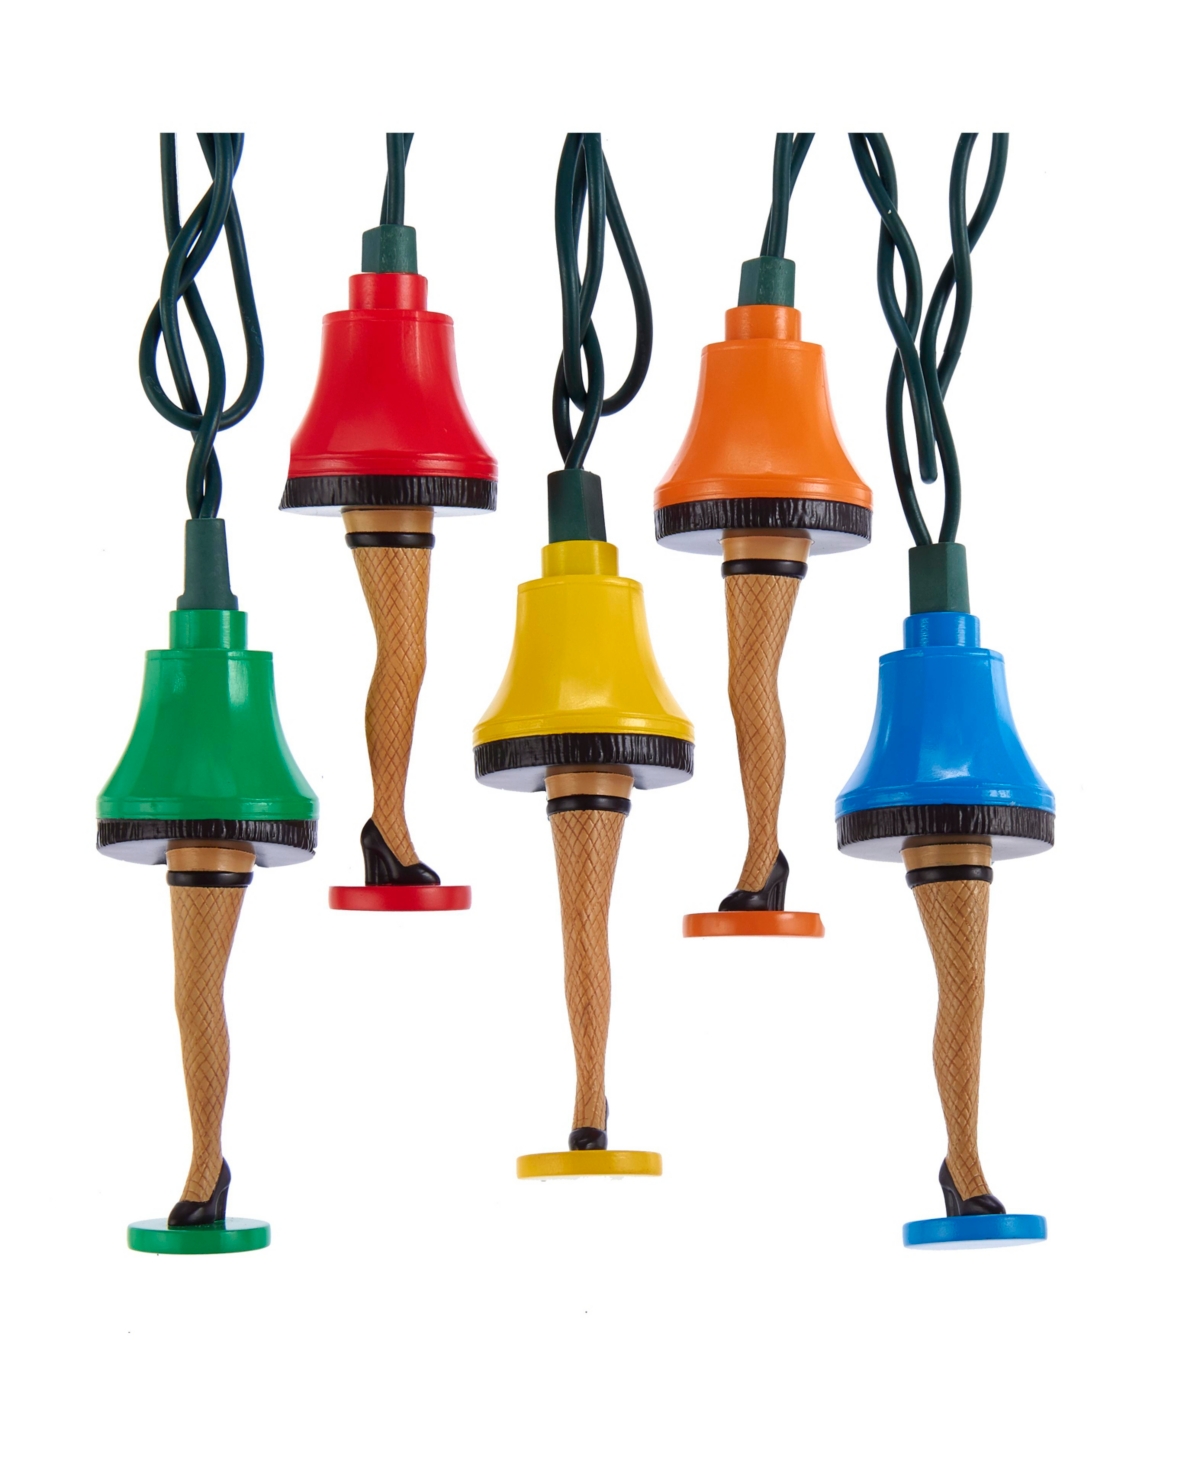 Kurt Adler Ul 10-light A Christmas Story Colorful Leg Lamp Light Set In Multicolored